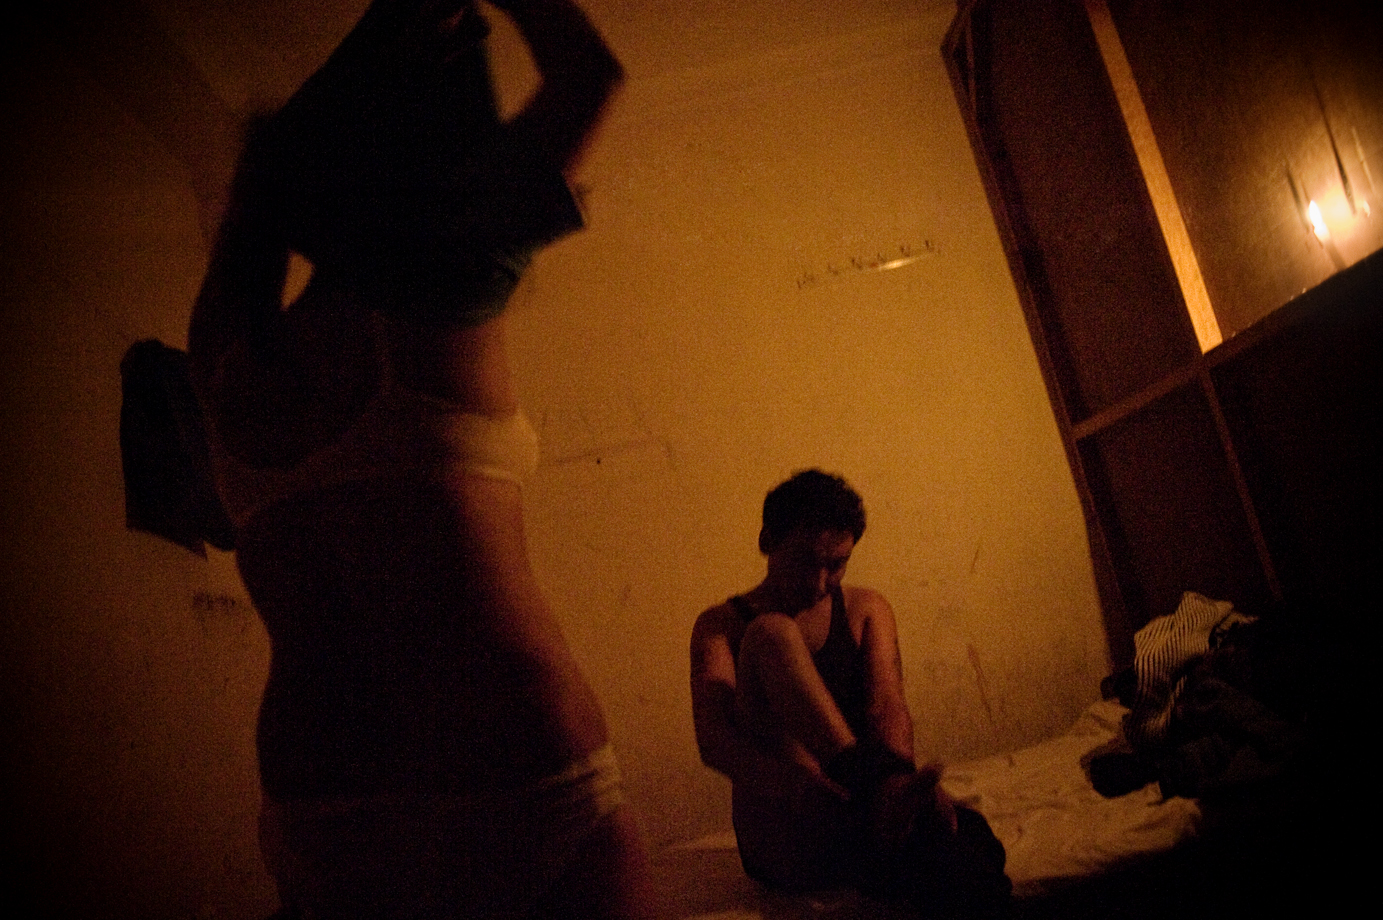  A man buys sex from a sex-worker, Kathmandu / Nepal - 2009 